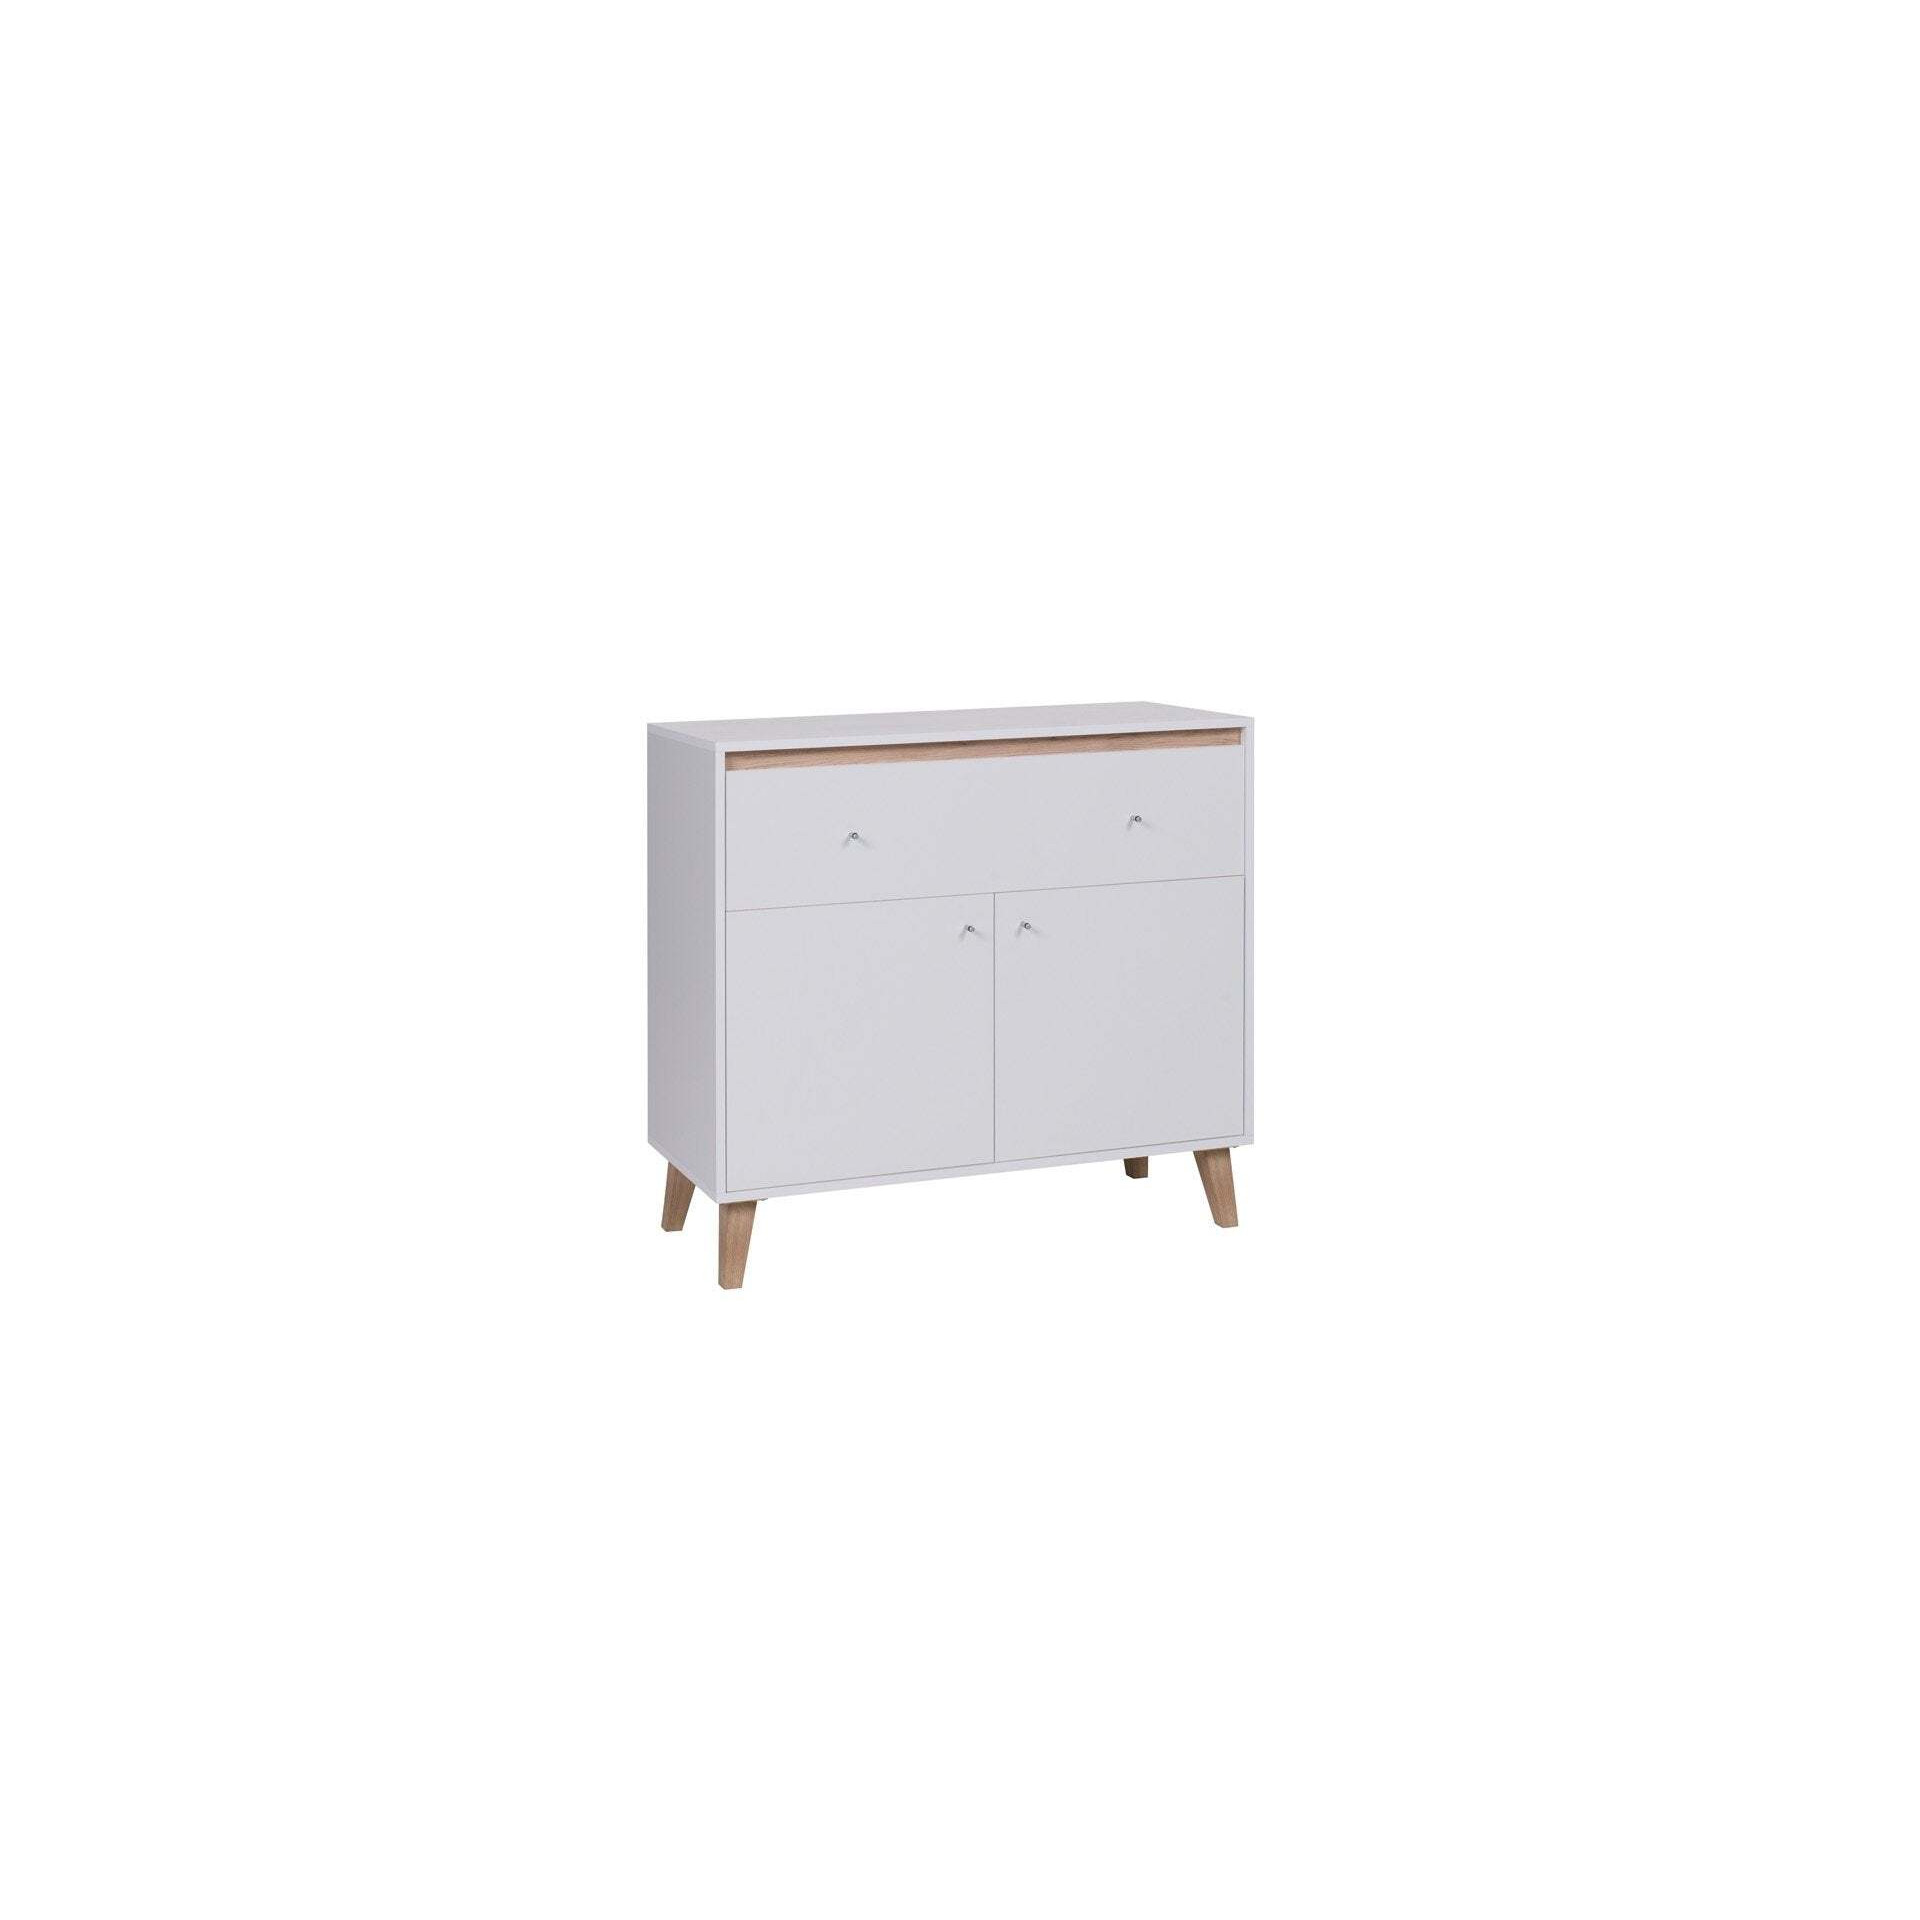 Oviedo 01 Sideboard Cabinet 100cm - White Matt 100cm - image 1